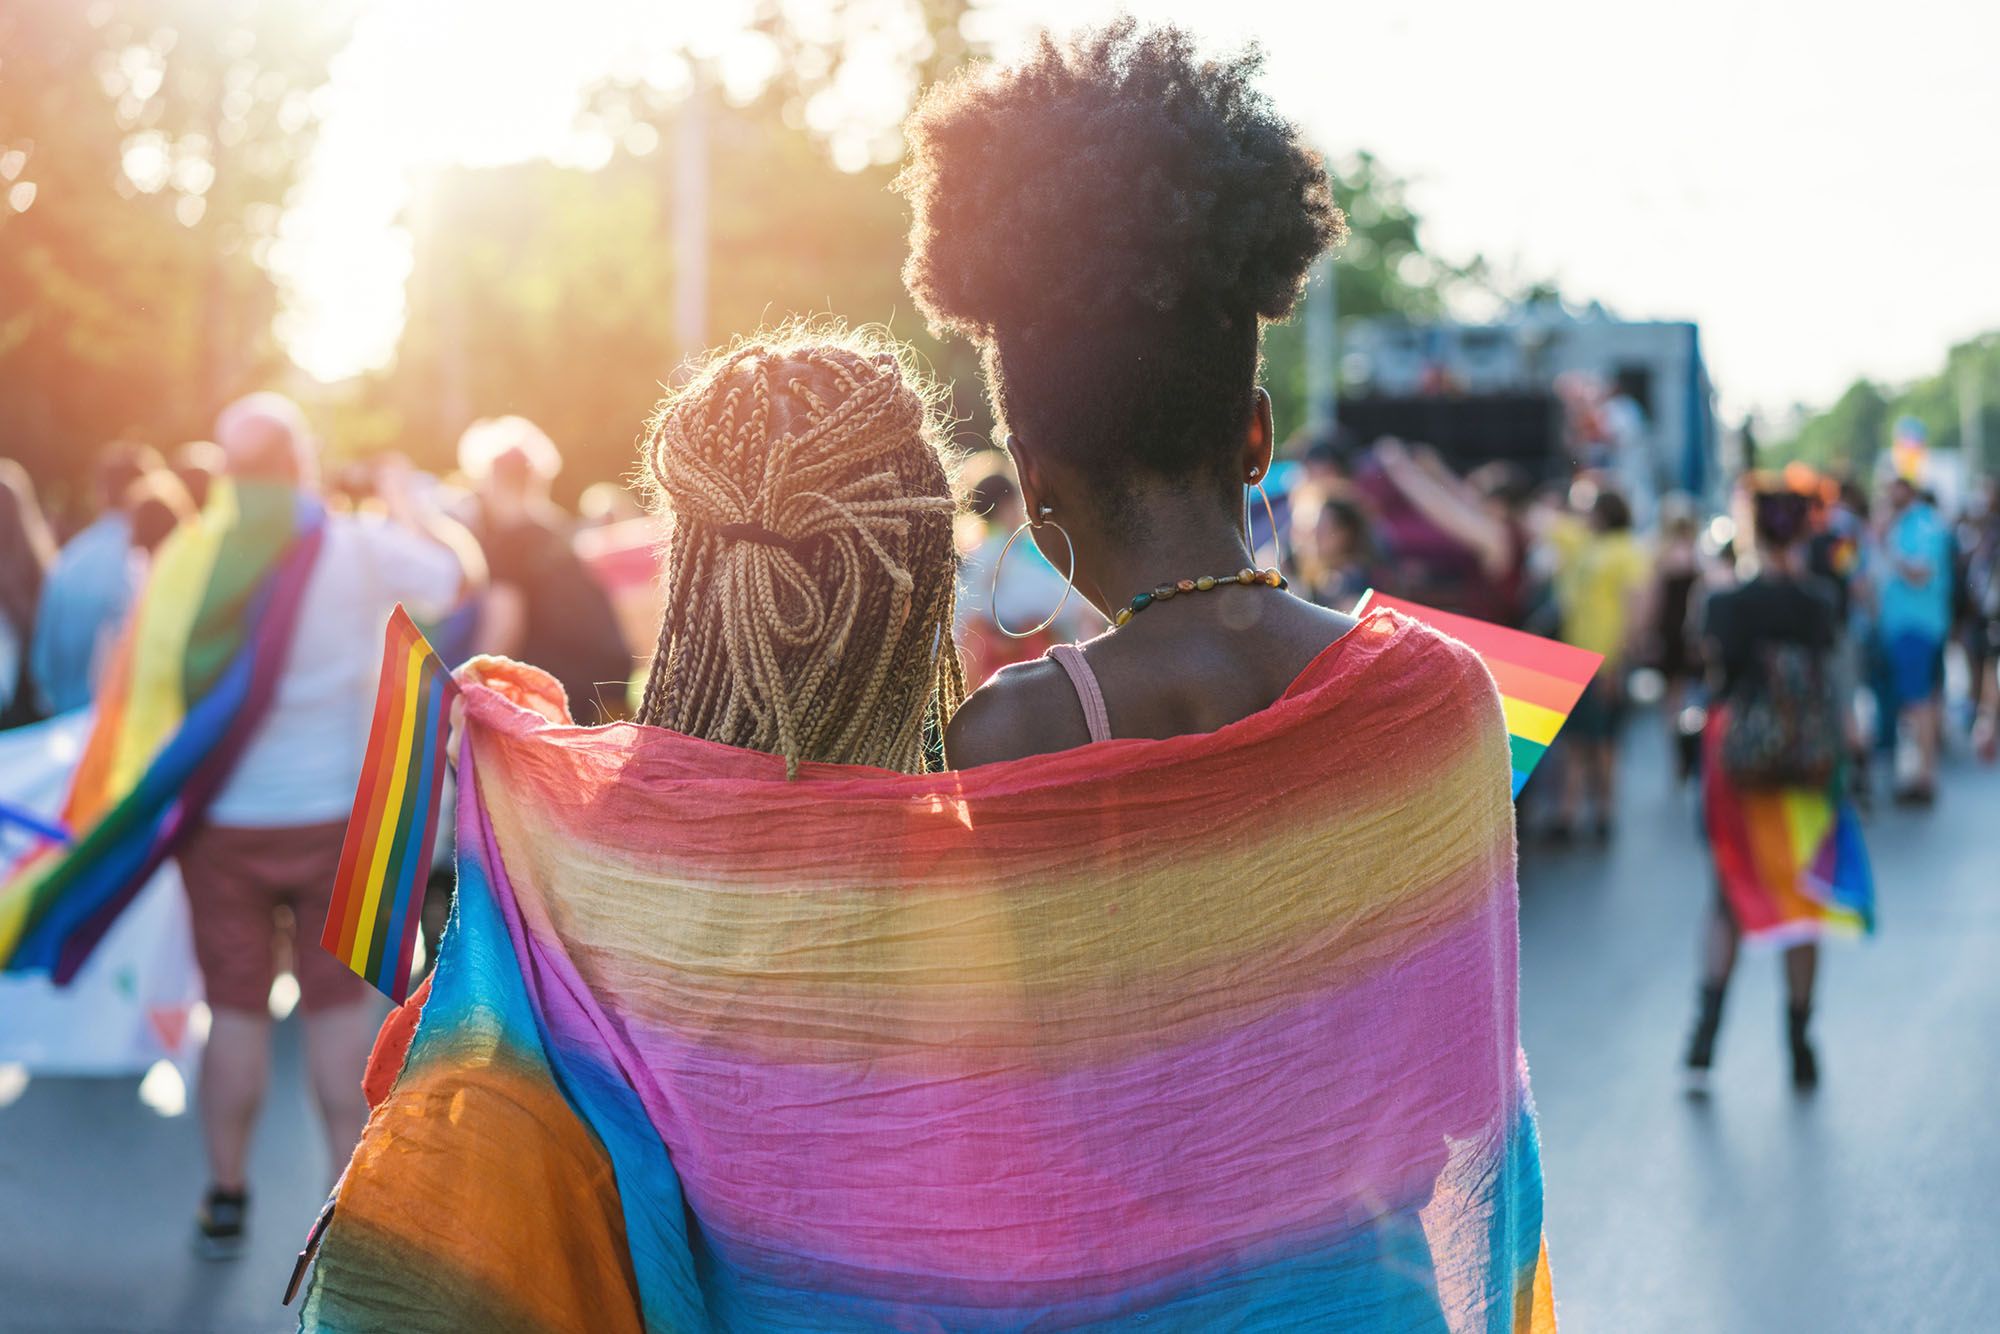 Zwei Frauen stehen während einer Pride-Parade eng beieinander und haben eine Regenbogen-Flagge um sich gelegt.